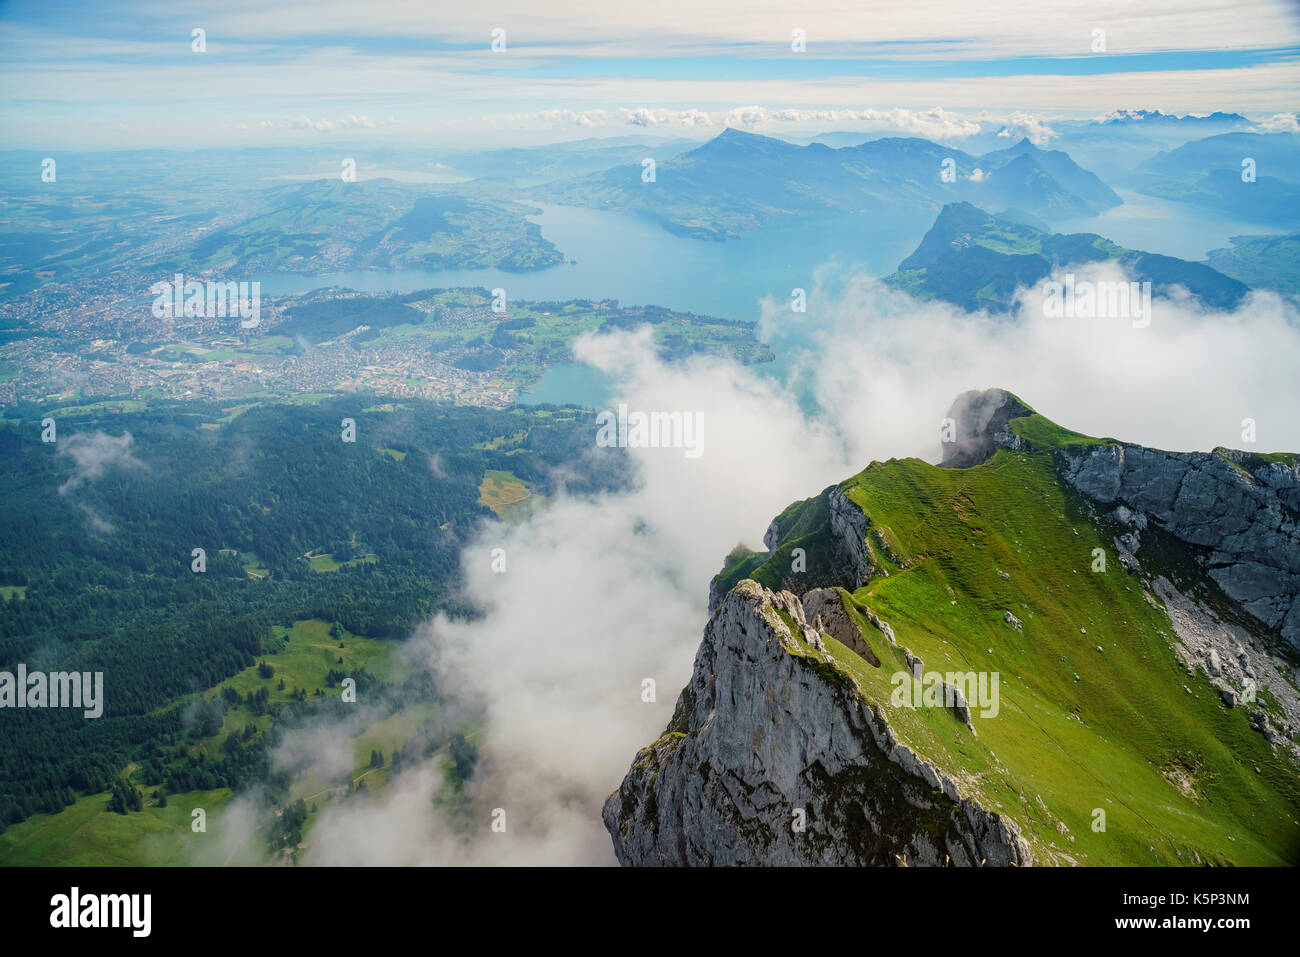 Tolle Landschaft mit See über den Pilatus, Luzern, Schweiz Stockfoto